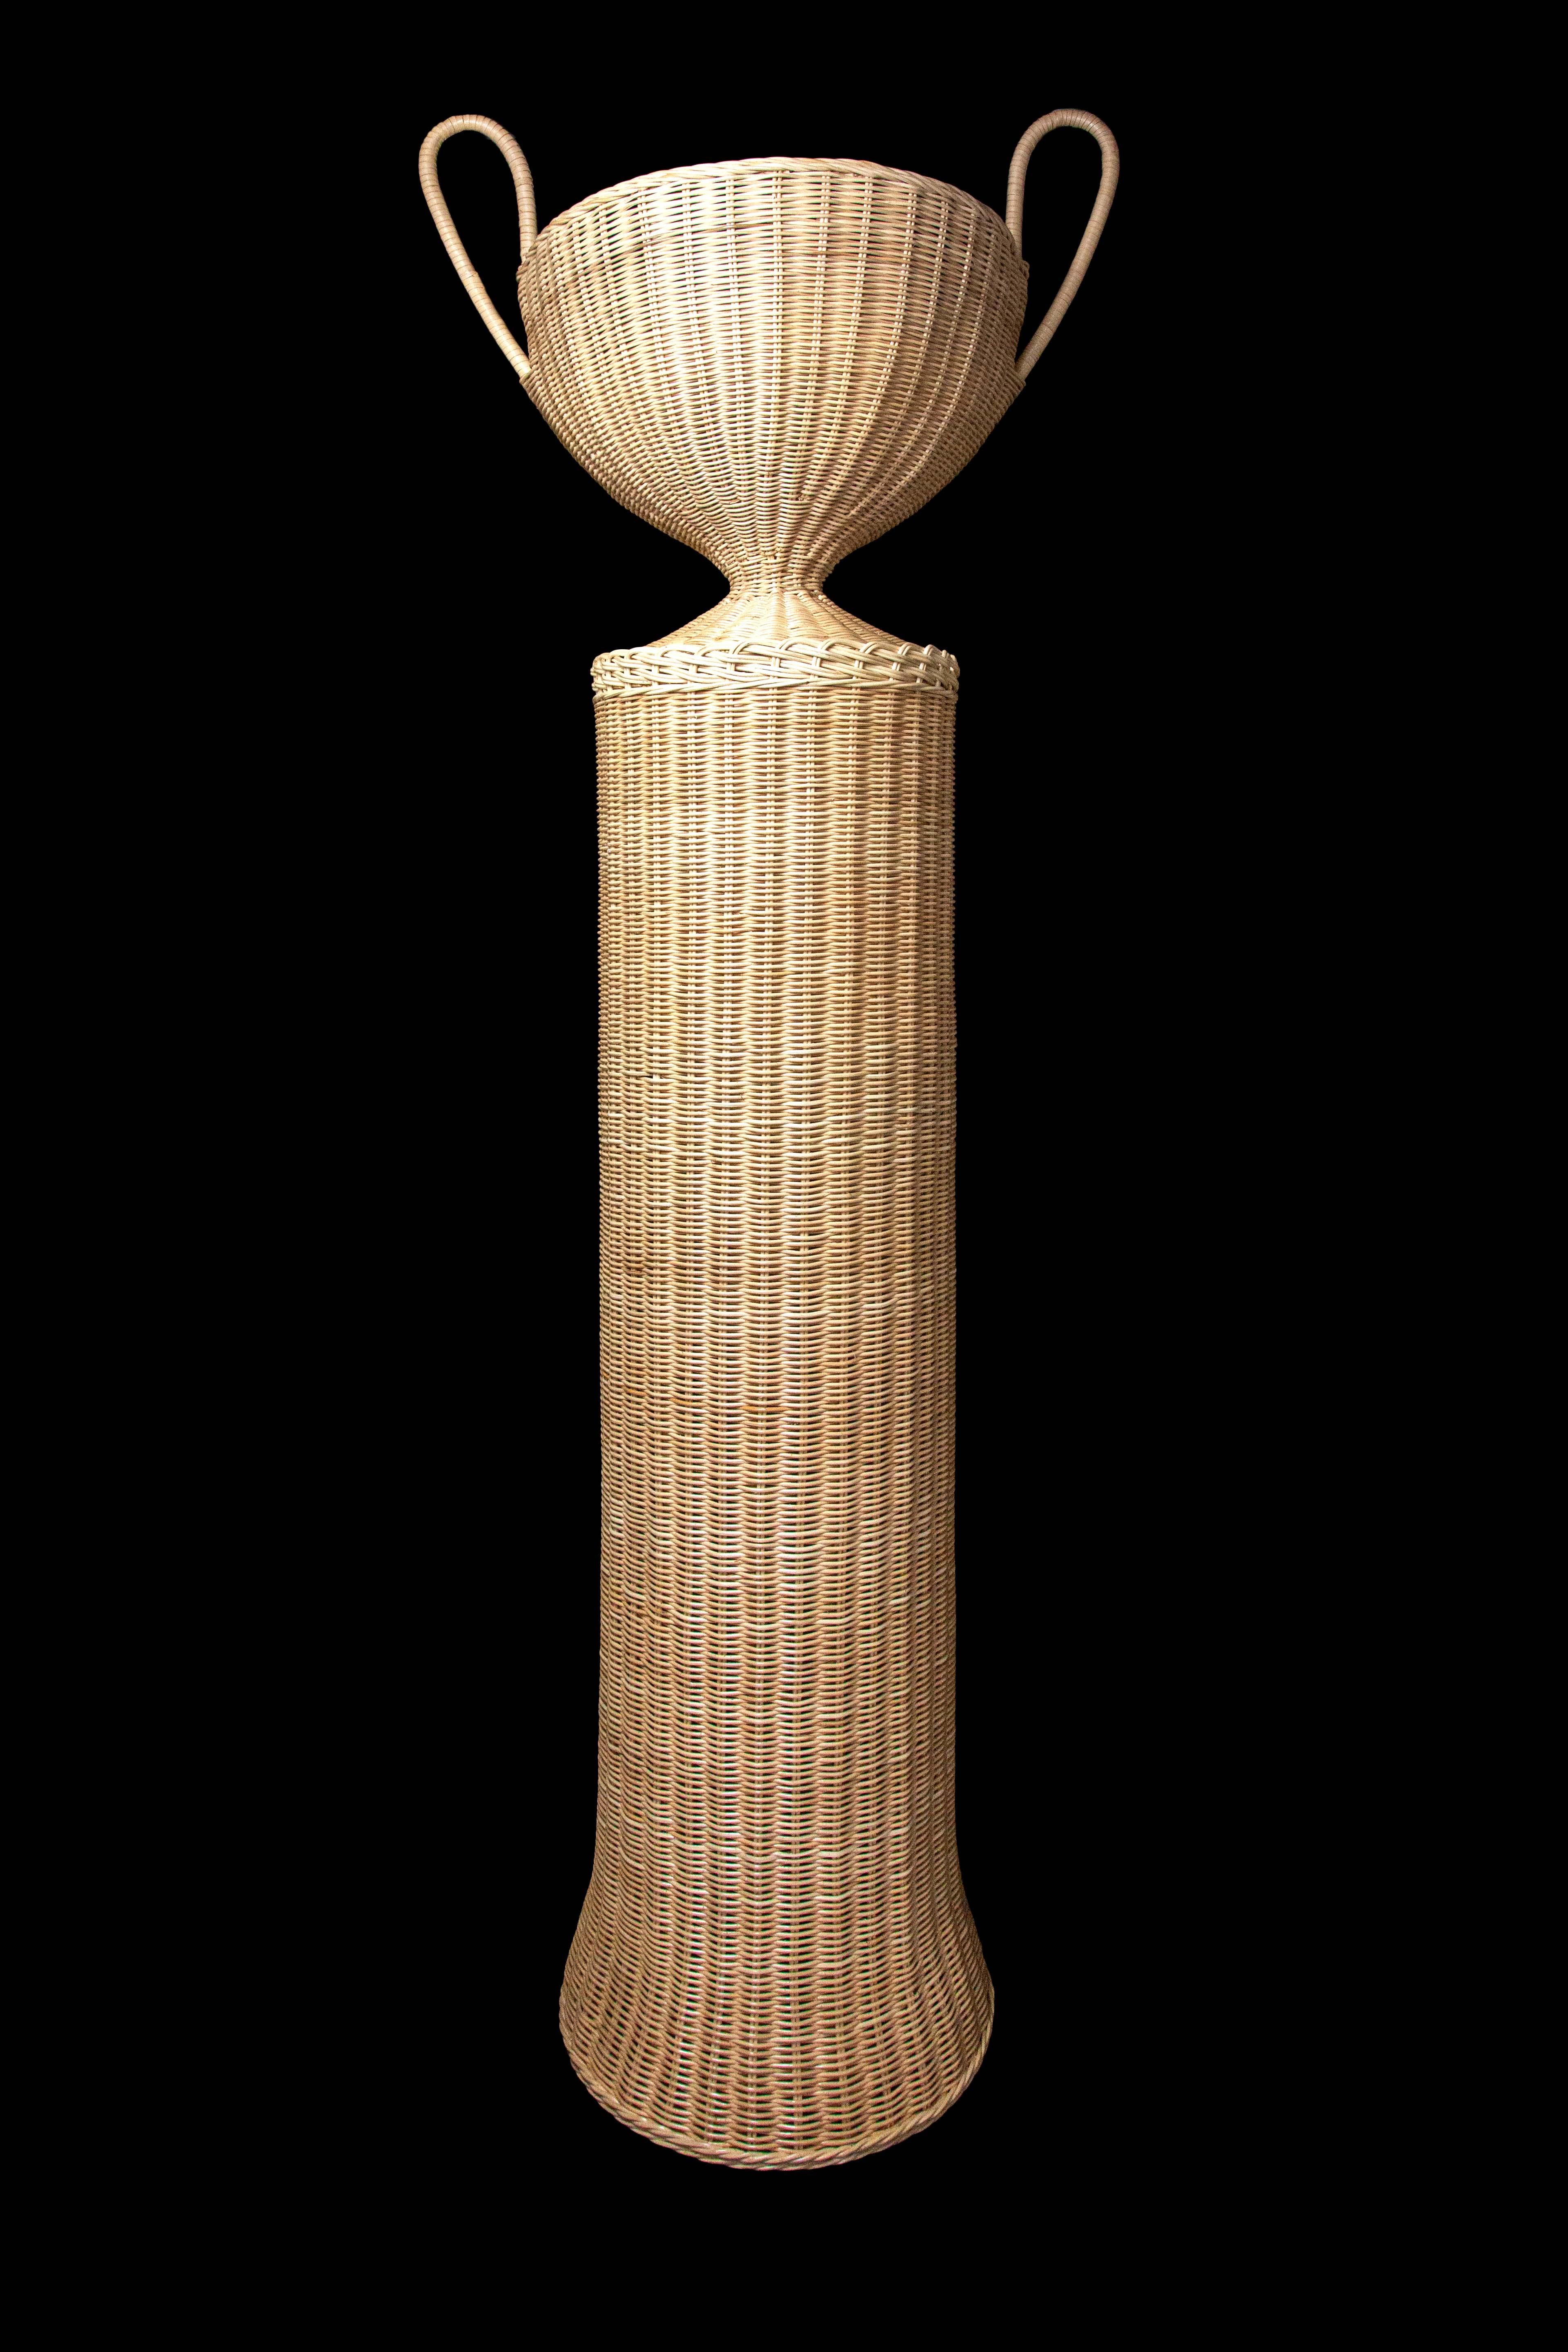 Piédestal en osier (rotin) Creel and Gow avec urne. Fabriqué exclusivement pour Creel and Gow à Tanger au Maroc.